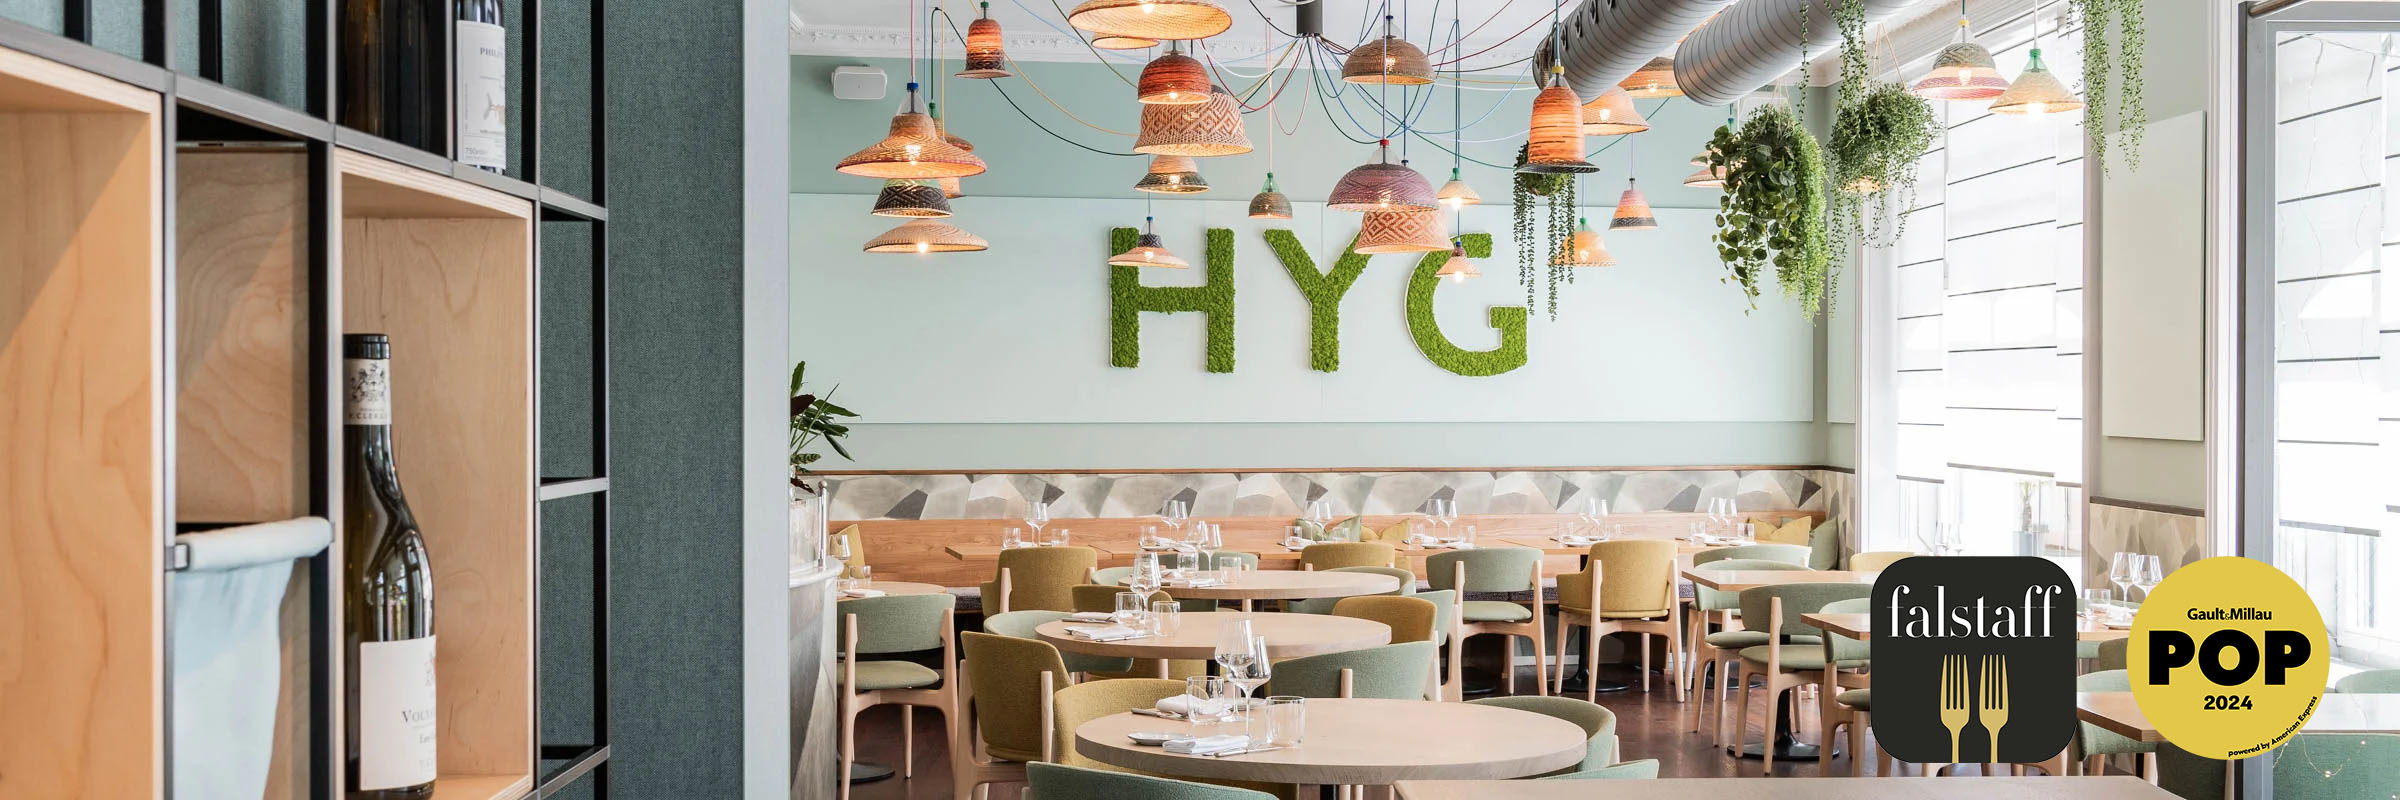 HYG Restaurant Bar in Weggis am Vierwaldstaettersee Restaurant Interior mit Gault Millau Pop Logo und Falstaff Logo - HYG Restaurant & Bar